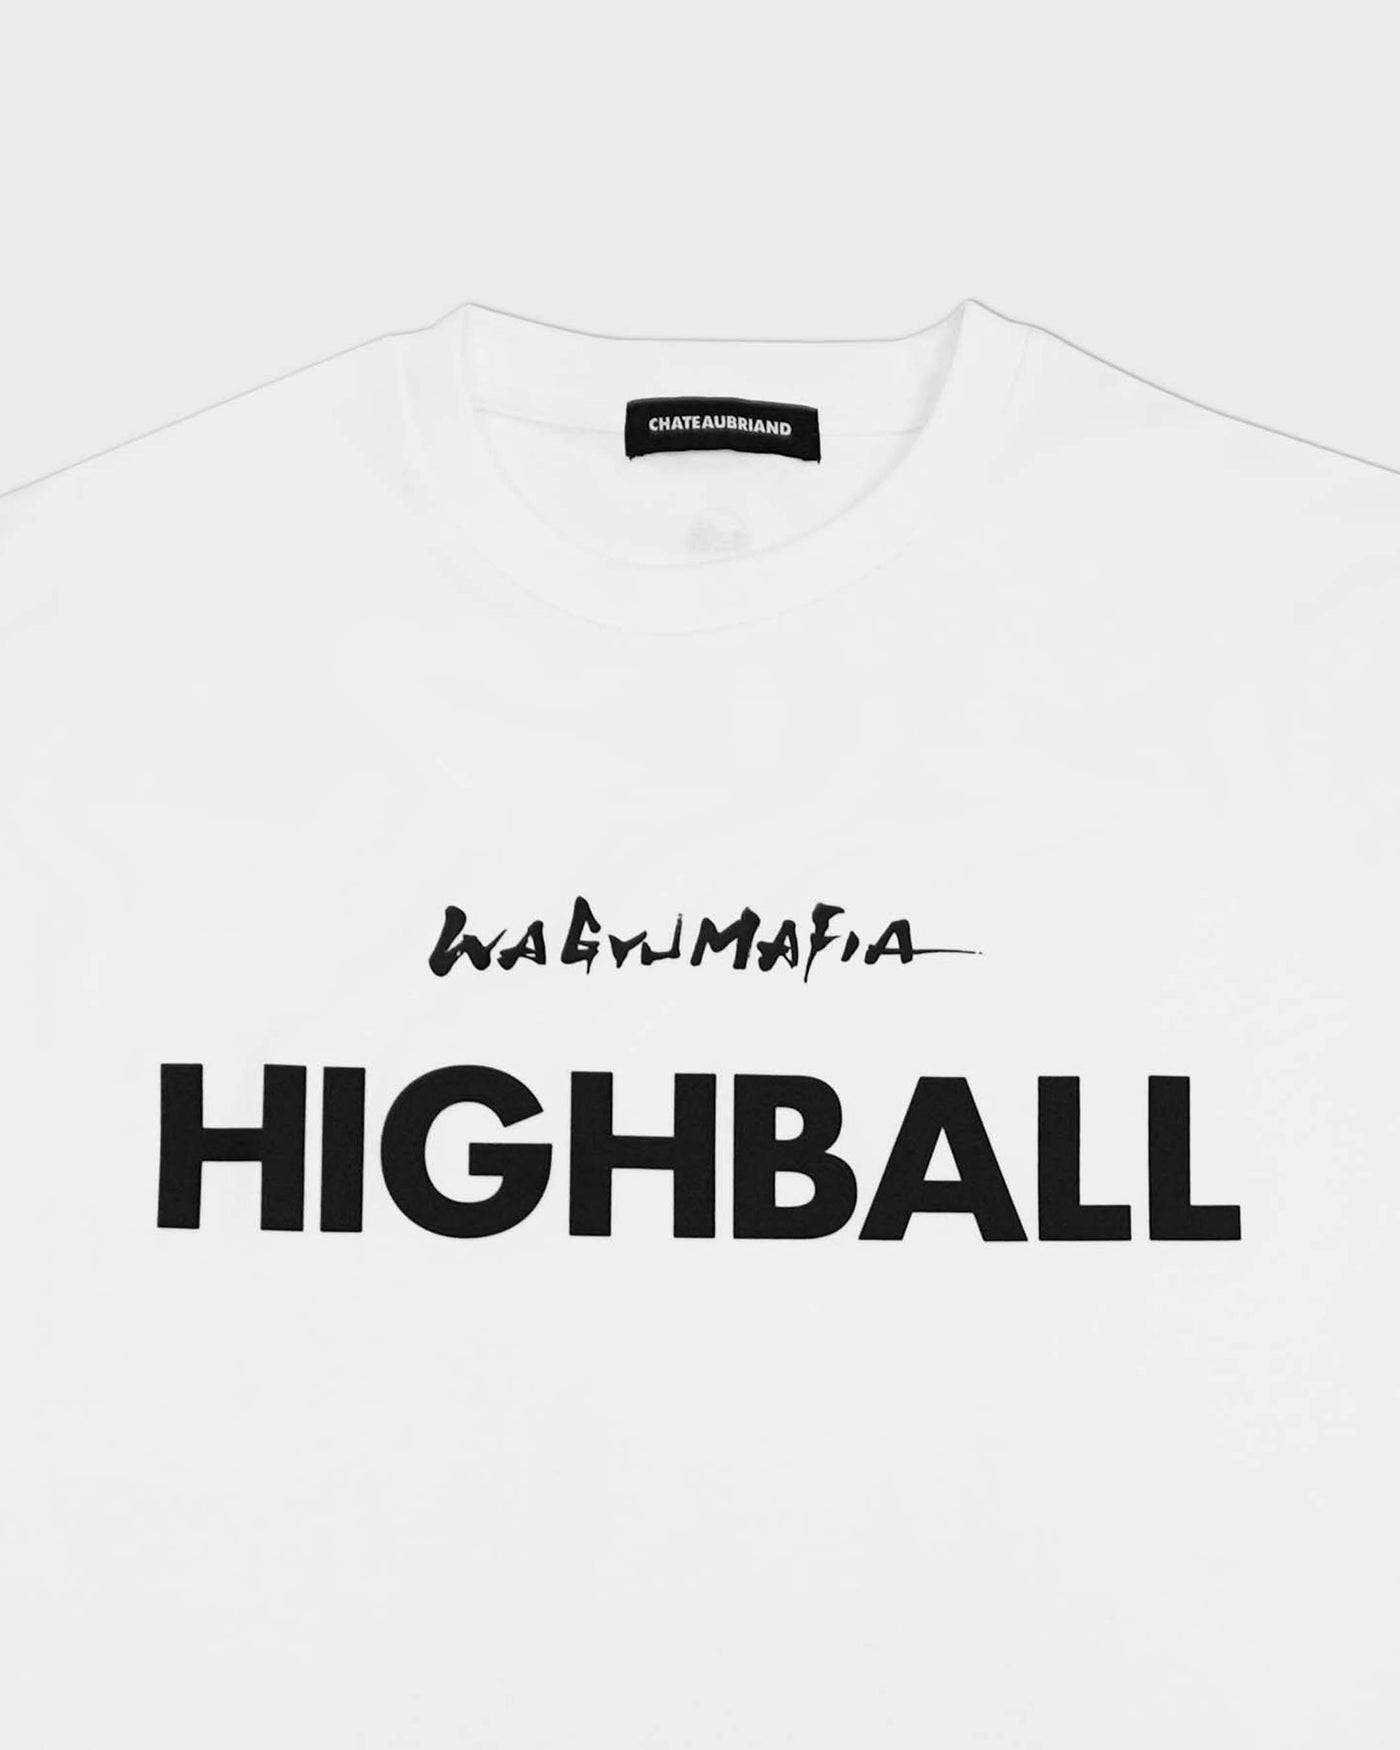 HIGHBALL T SHIRT WHITE